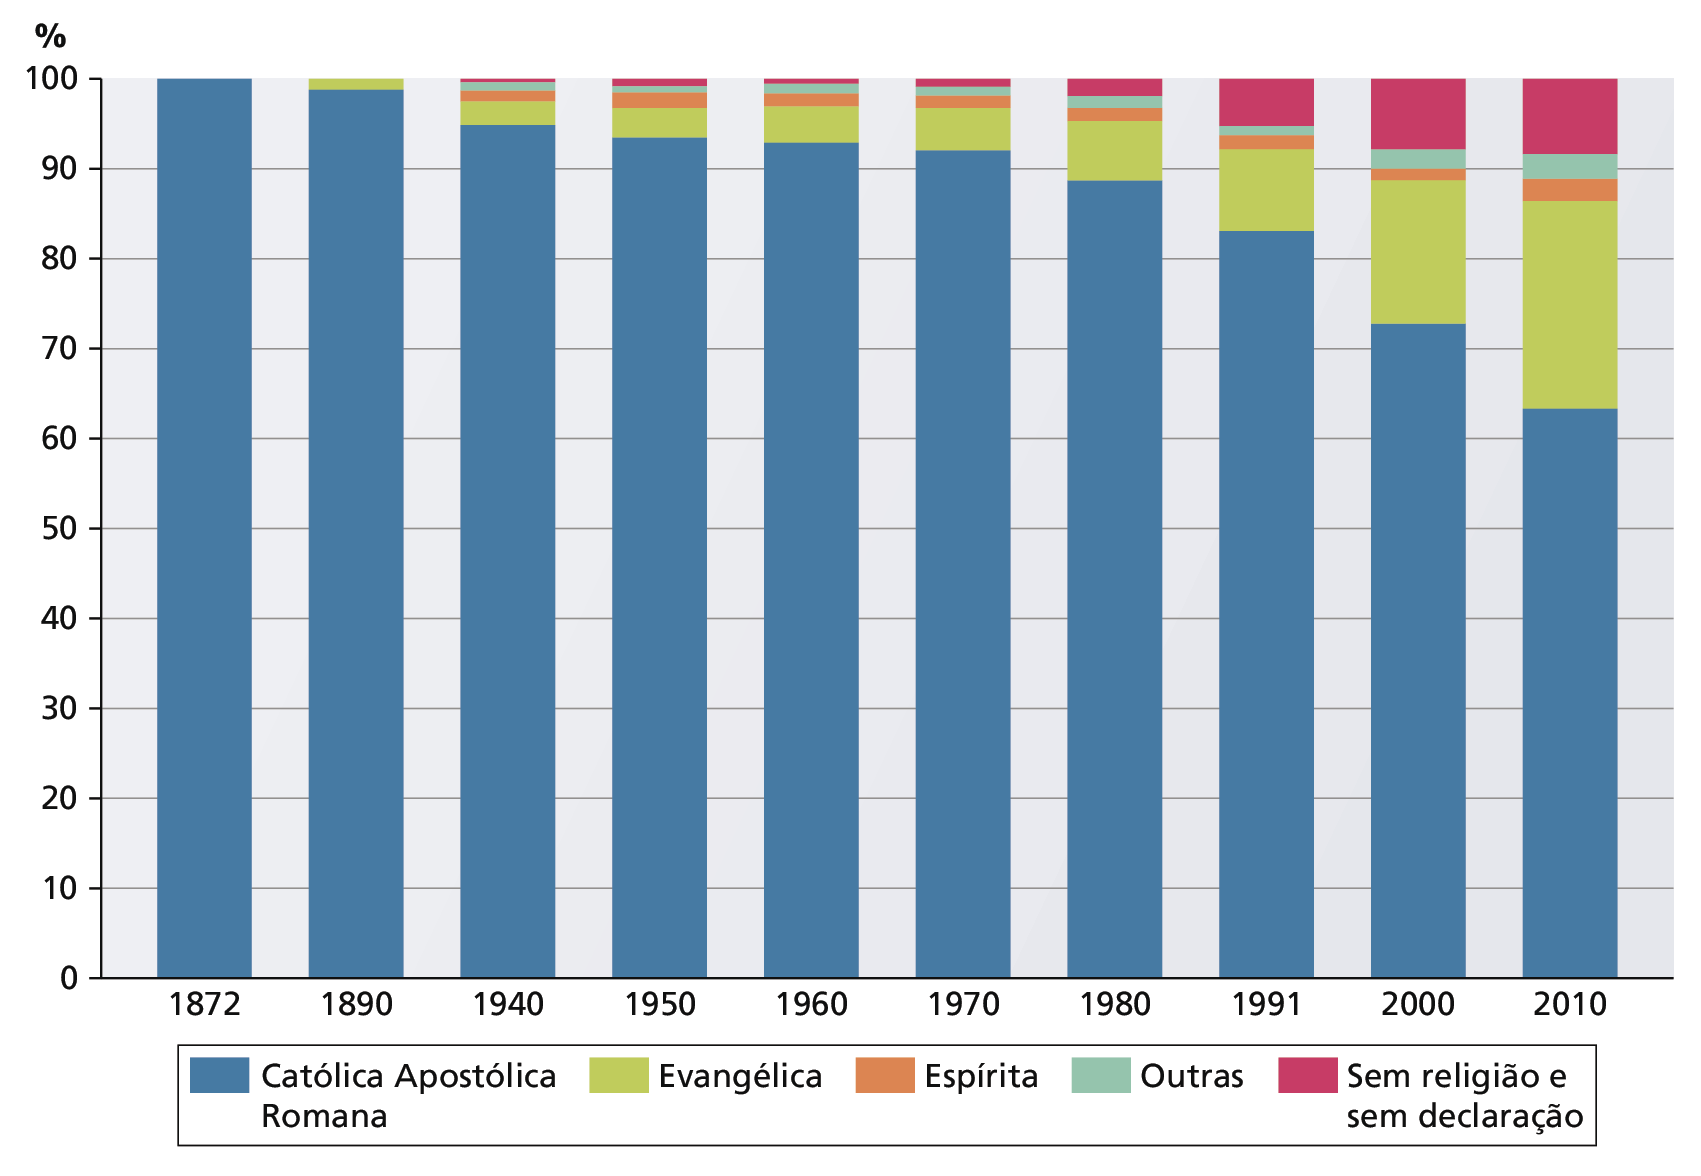 Gráfico de barras.  Brasil: adeptos de diferentes religiões (porcentagem). 1872 a 2010. No eixo vertical, as informações de porcentagem de 0 a 100 e, no eixo horizontal, os anos dos censos: 1872, 1890, 1940, 1950, 1960, 1970 1980, 1991, 2000 e 2010. As religiões são representadas por cores. Na legenda: em azul: "Católica Apostólica Romana"; em verde, "Evangélica"; em laranja, "Espírita"; em azul claro, "Outras"; em rosa, "Sem religião e sem declaração". Ano. 1872. Religião Católica Apostólica Romana: 100 por cento. Ano. 1890. Religião Católica Apostólica Romana: cerca de 98 por cento. Evangélica: cerca de 2 por cento. Ano. 1940. Religião Católica Apostólica Romana: cerca de 95 por cento. Evangélica: cerca de 3 por cento. Espírita: cerca de 1 por cento. Outras: cerca 1 por cento. Sem religião e sem declaração: cerca de meio por cento. Ano. 1950. Religião Católica Apostólica Romana: cerca de 94 por cento. Evangélica: cerca de 3 por cento. Espírita: cerca de 2 por cento. Outras: cerca de meio por cento. Sem religião e sem declaração: cerca de meio por cento. Ano. 1960. Religião Católica Apostólica Romana: cerca de 93 por cento. Evangélica: cerca de 5 por cento. Espírita: cerca de 1 por cento. Outras: menos de 1 por cento. Sem religião e sem declaração: menos de 1 por cento. Ano. 1970. Religião Católica Apostólica Romana: cerca de 92 por cento. Evangélica: cerca de 6 por cento. Espírita: cerca de 1 por cento; Outras: menos de 1 por cento. Sem religião e sem declaração: menos de um por cento. Ano. 1980. Religião: Católica Apostólica Romana: cerca de 89 por cento. Evangélica: cerca de 7 por cento. Espírita: cerca de 1 por cento. Outras: cerca de 1 por cento. Sem religião e sem declaração: cerca de 1 por cento. Ano. 1991. Religião Católica Apostólica Romana: cerca de 82 por cento. Evangélica: cerca de 9 por cento. Espírita: cerca de 1 por cento. Outras: cerca de 1 por cento. Sem religião e sem declaração: cerca de 6 por cento. Ano. 2000. Religião Católica Apostólica Romana: cerca de 72 por cento. Evangélica:  cerca de 18 por cento. Espírita: cerca de 1 por cento. Outras: pouco mais de 1 por cento. Sem religião e sem declaração: cerca de 8 por cento. Ano. 2010. Religião Católica Apostólica Romana: cerca de 62 por cento. Evangélica: cerca de 24 por cento. Espírita: cerca de 2 por cento. Outras: cerca de 2 por cento. Sem religião e sem declaração: cerca de  9 por cento.